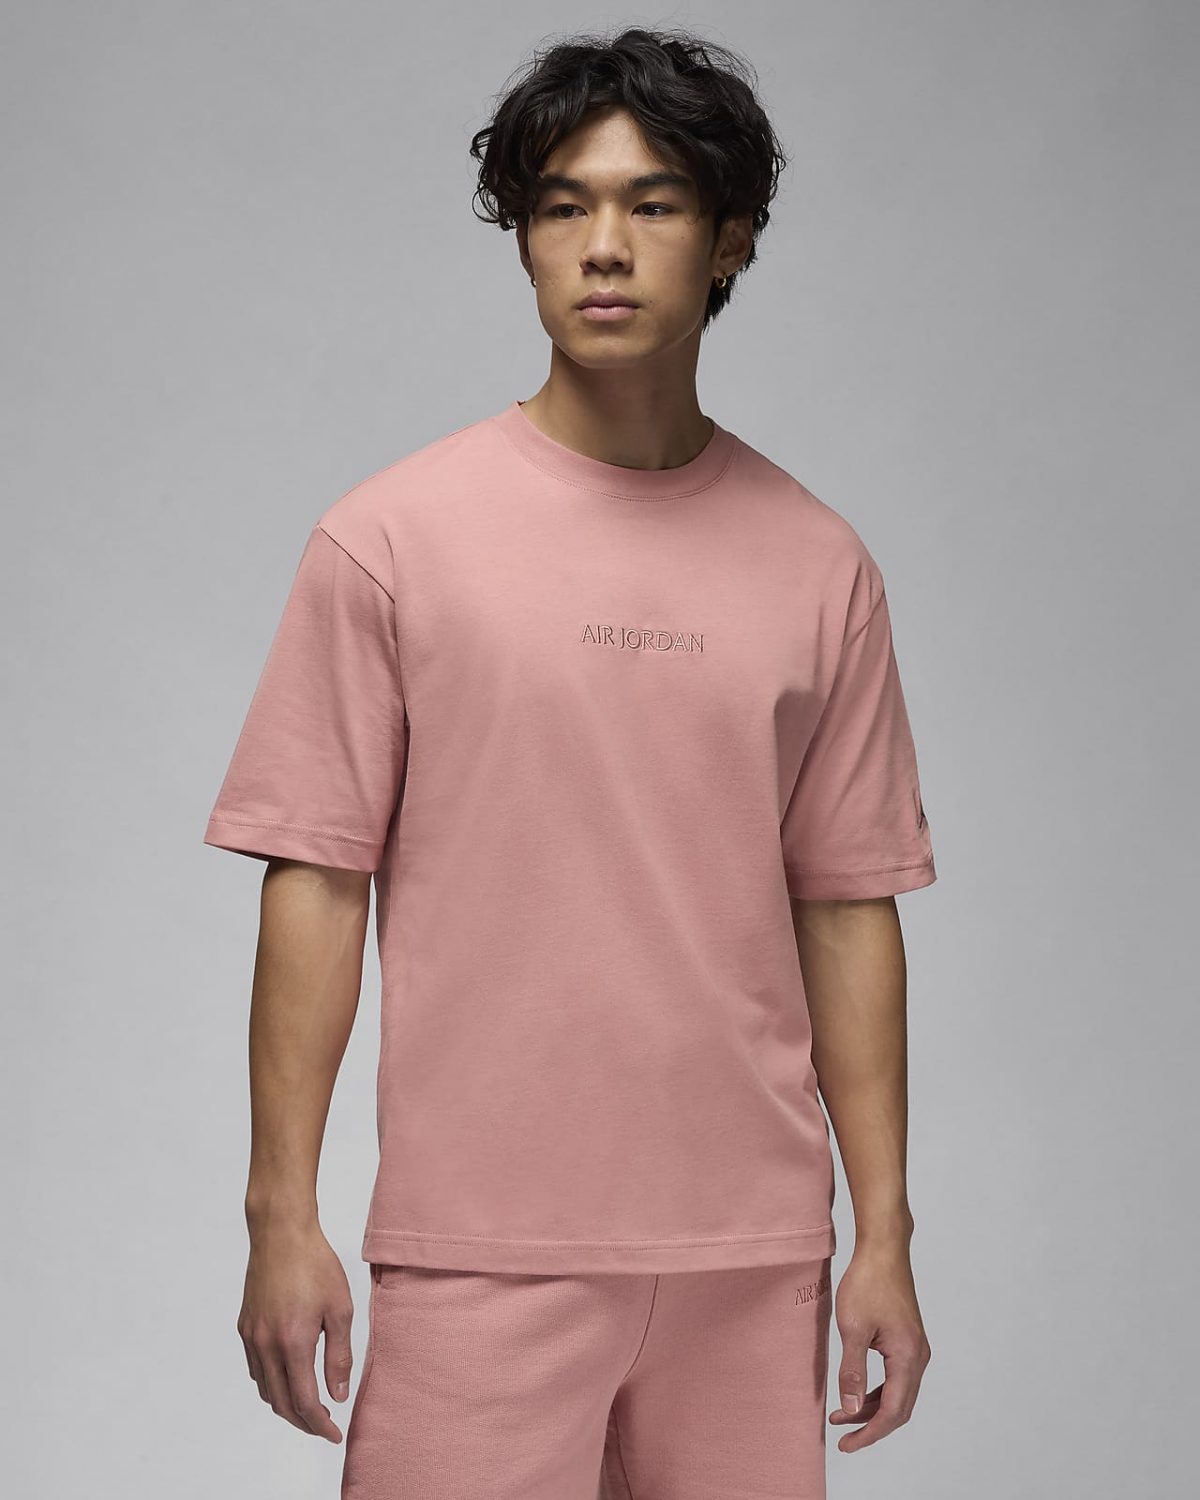 Мужская футболка nike Air Jordan Wordmark розовая фото